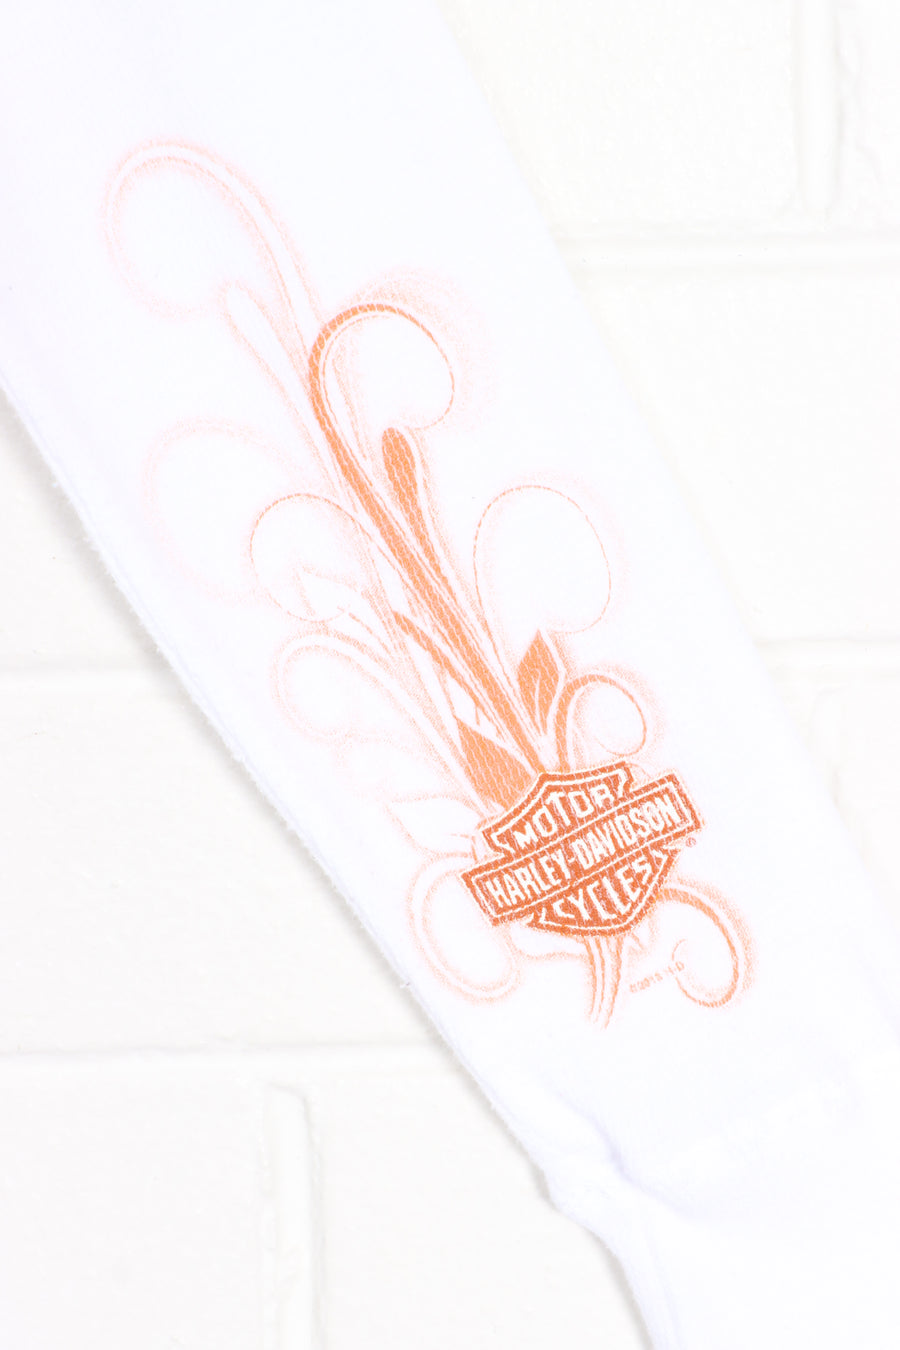 HARLEY DAVIDSON Glitter Logo Y2K Long Sleeve Crop Top (Women's S)